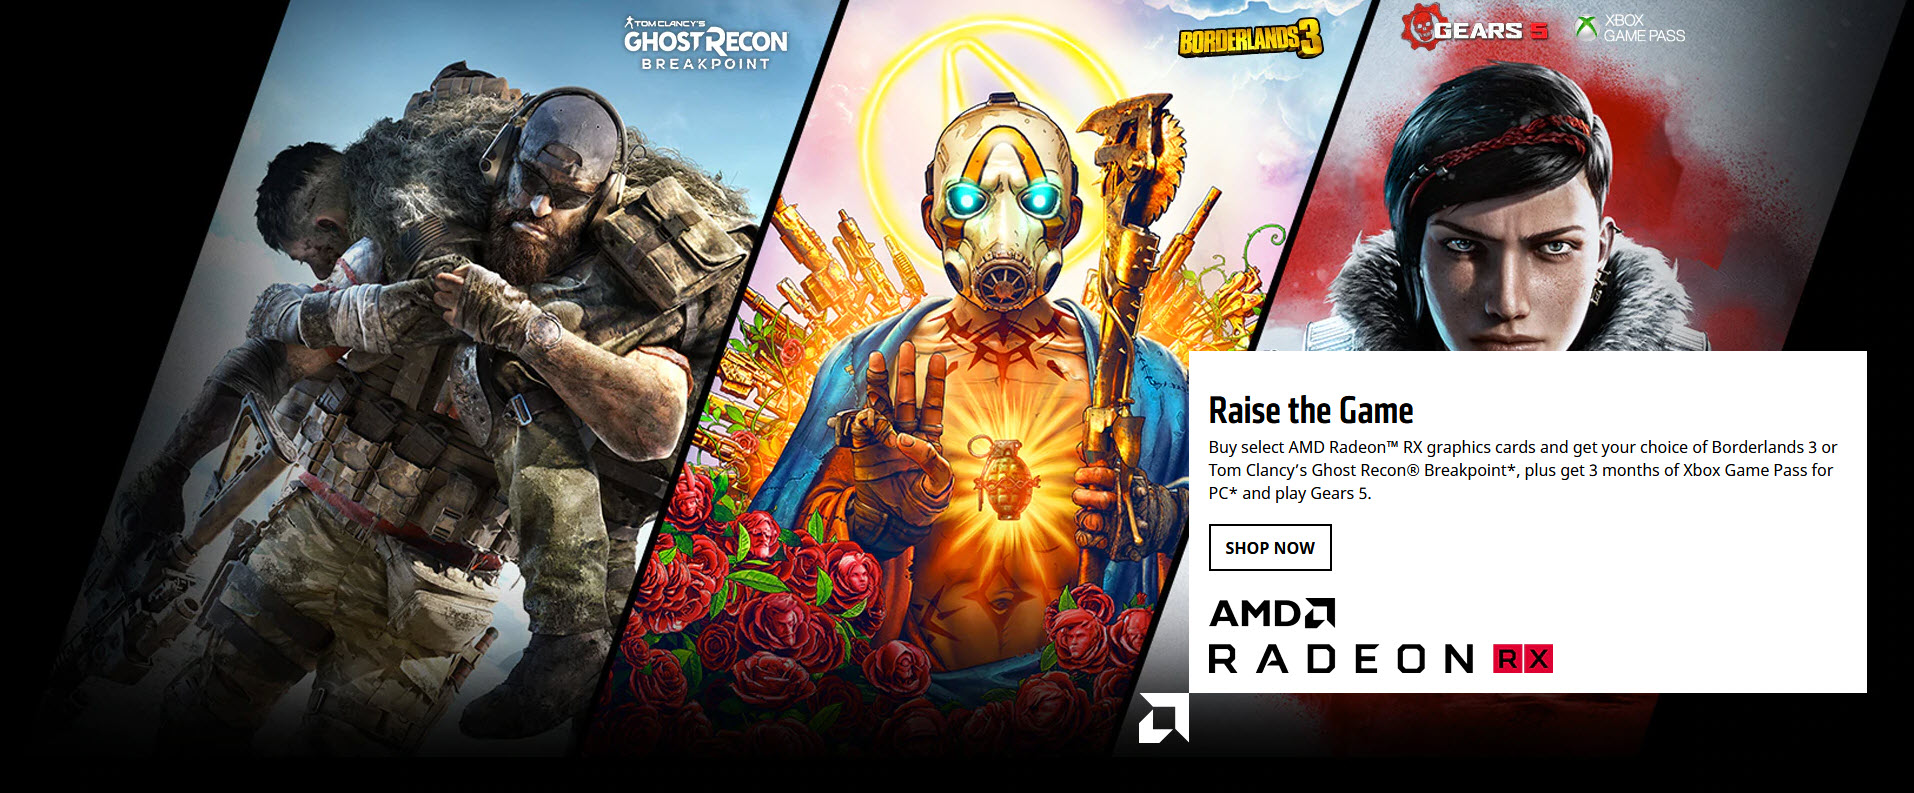 2019 10 25 10 58 30 โปรโมชั่นเกมบันเดิลจาก AMD สำหรับเกมเมอร์ที่ชื่นชอบกราฟิกการ์ด AMD Radeon และโปรเซสเซอร์ AMD Ryzen